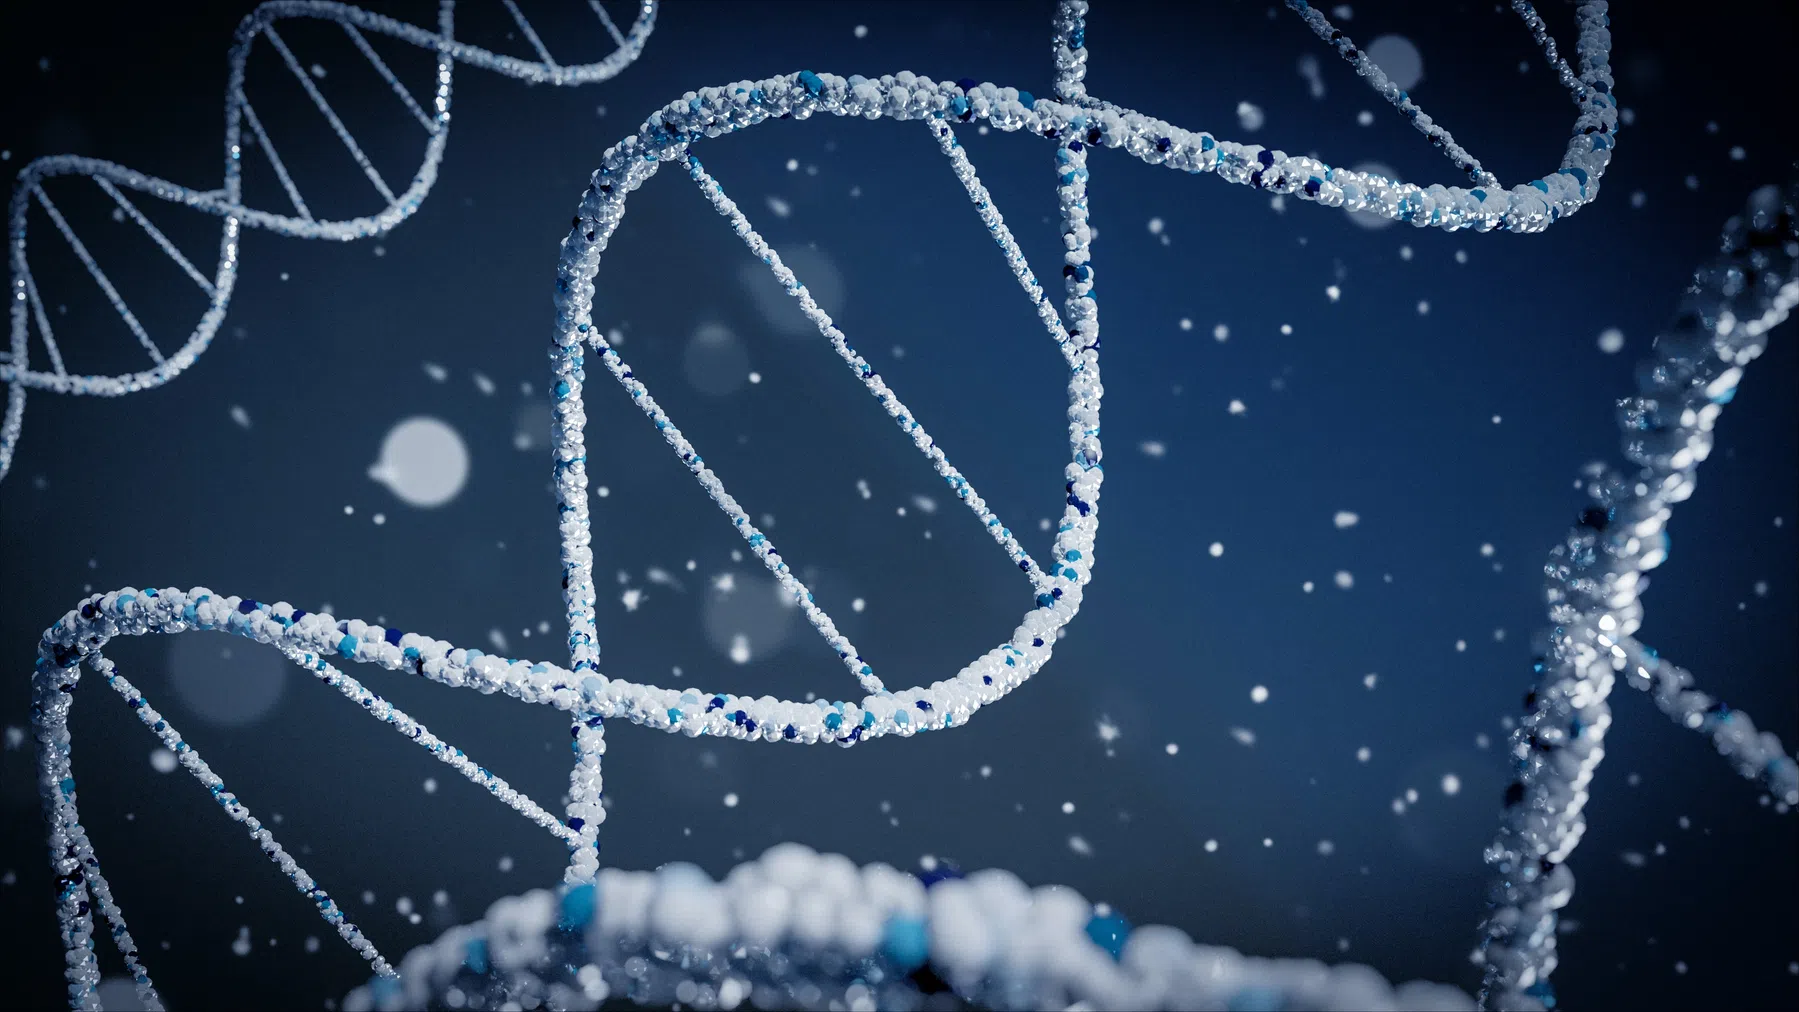 Doorbraak met dna-techniek CRISPR: uitkomst voor mensen met bloedziekte sikkelcel